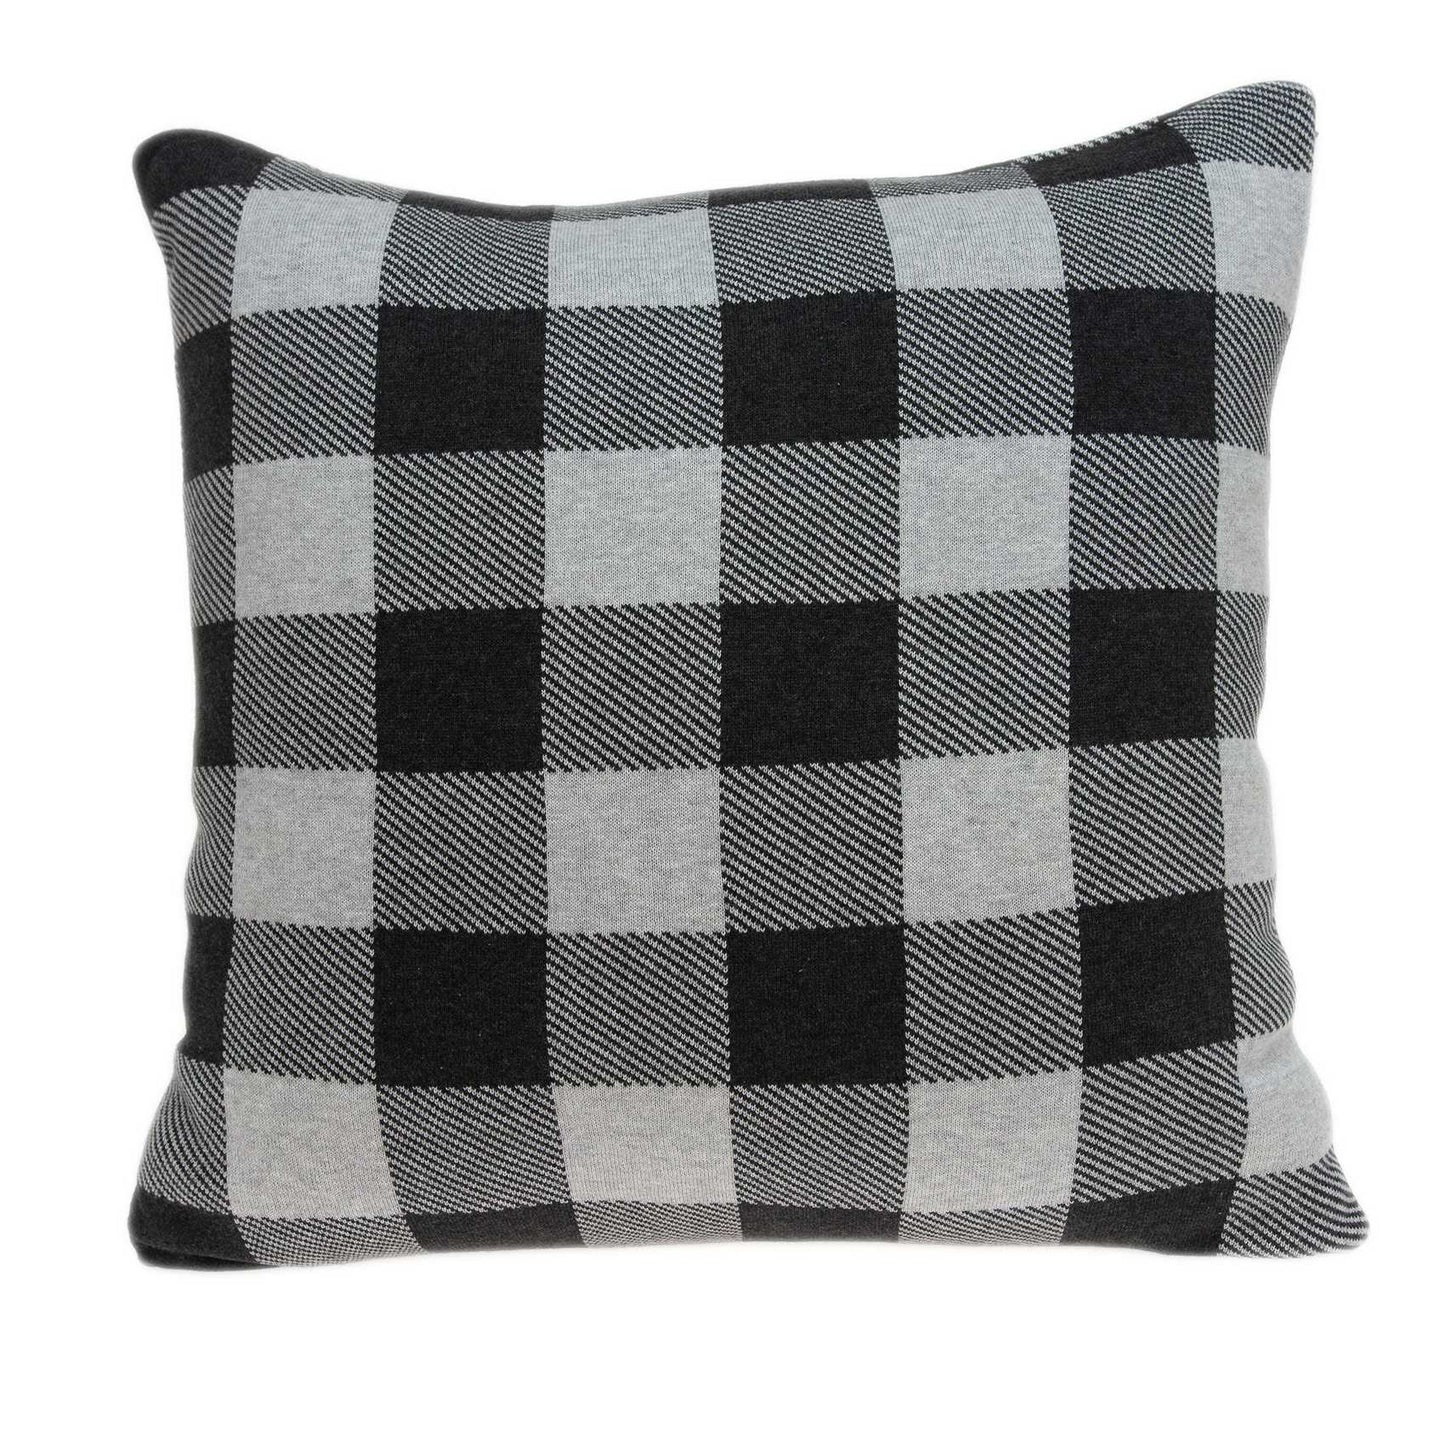 20" Gray Plaid Cotton Throw Pillow